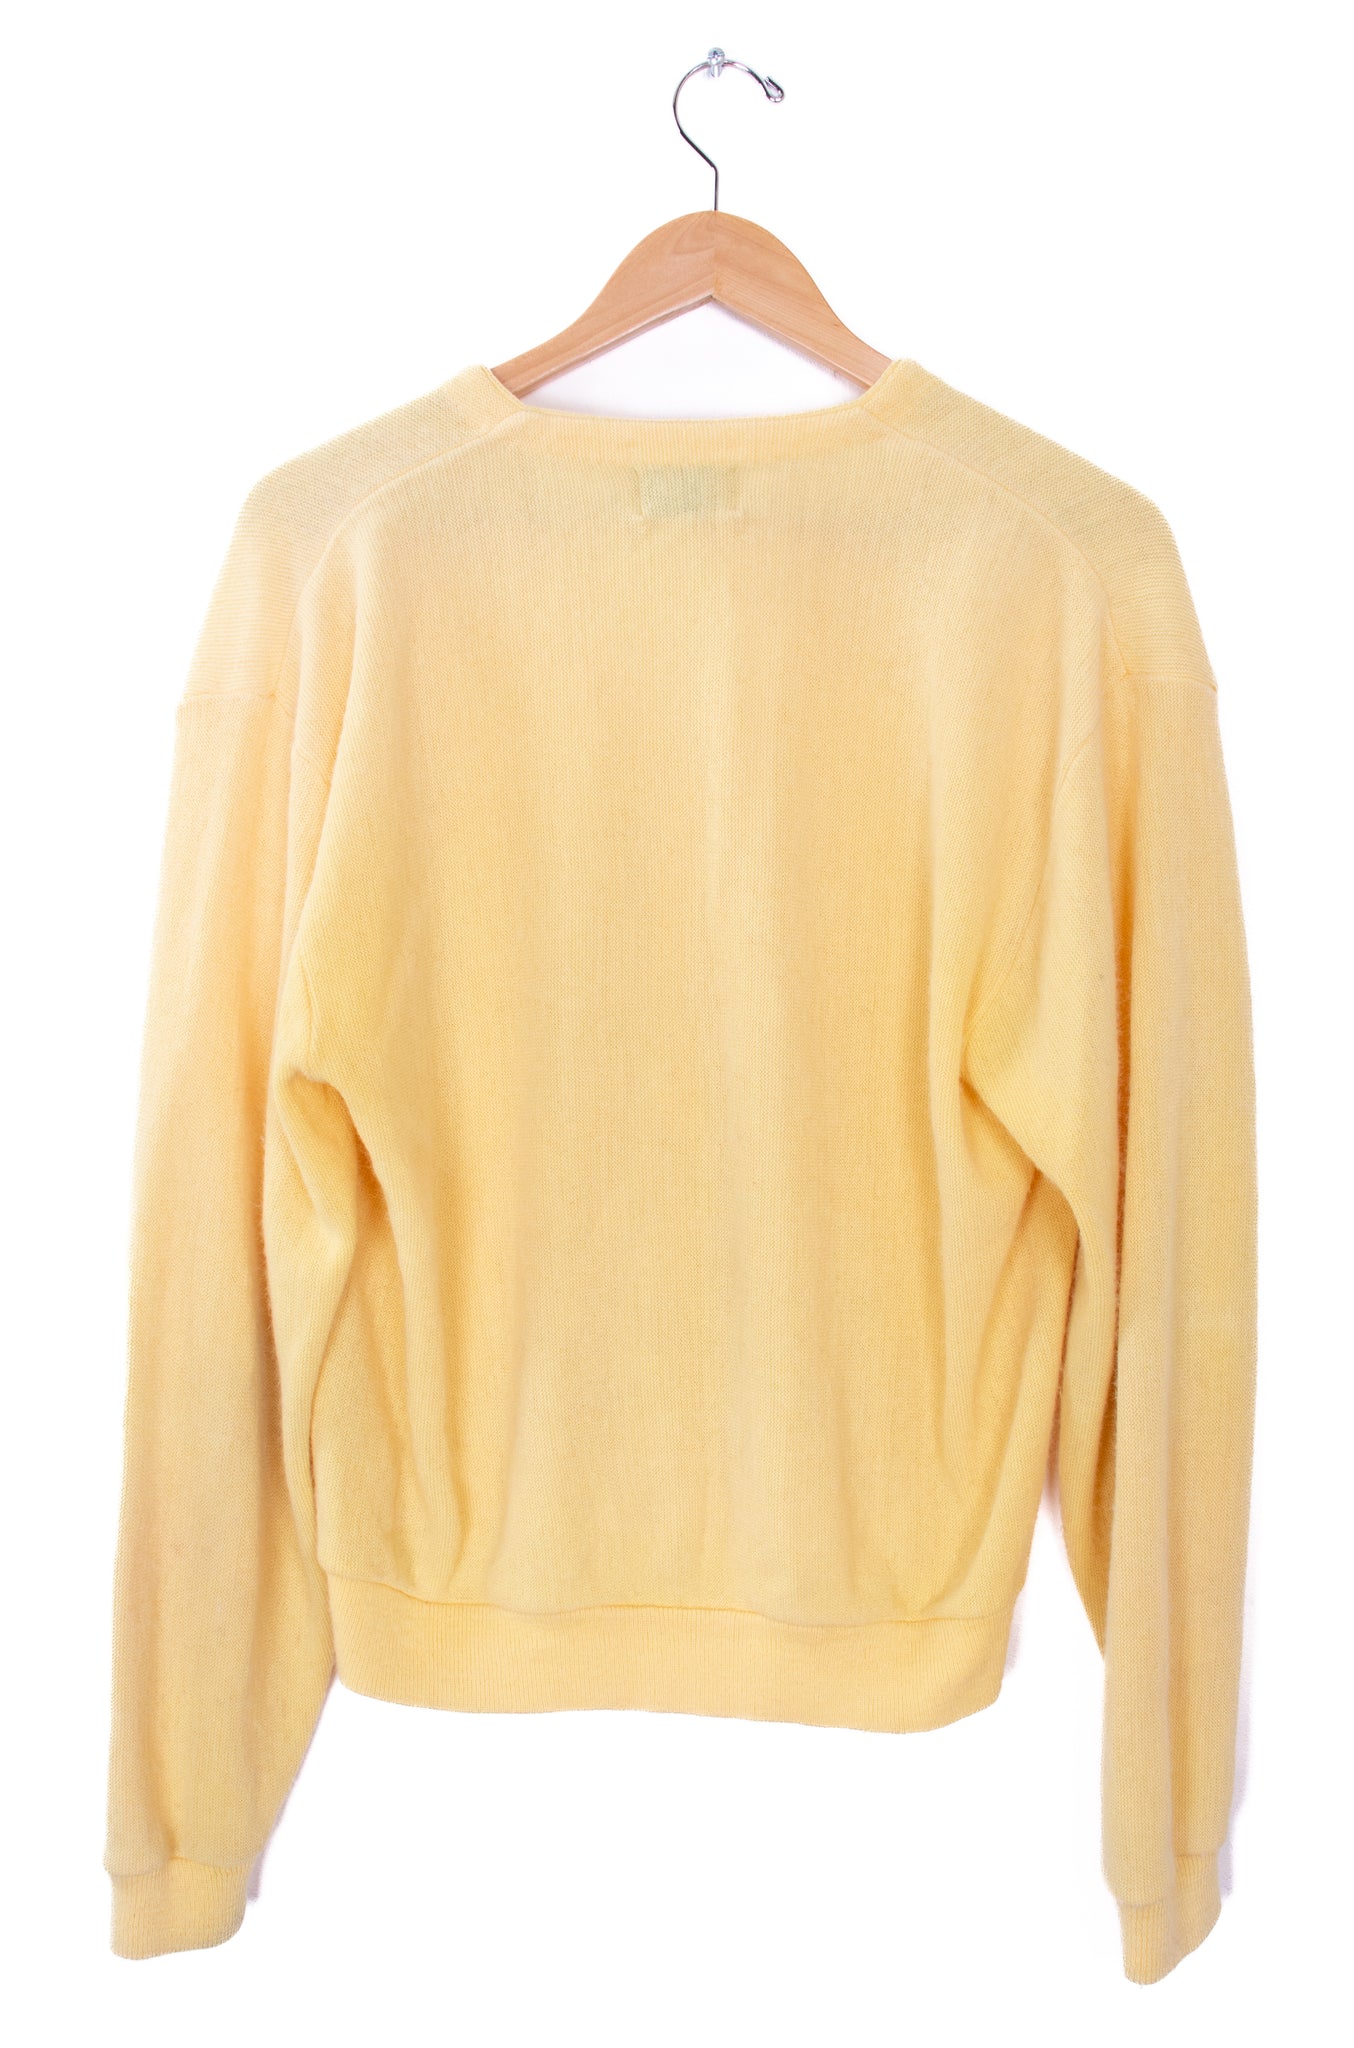 80s Pinnacle Yellow Sweater Cardigan